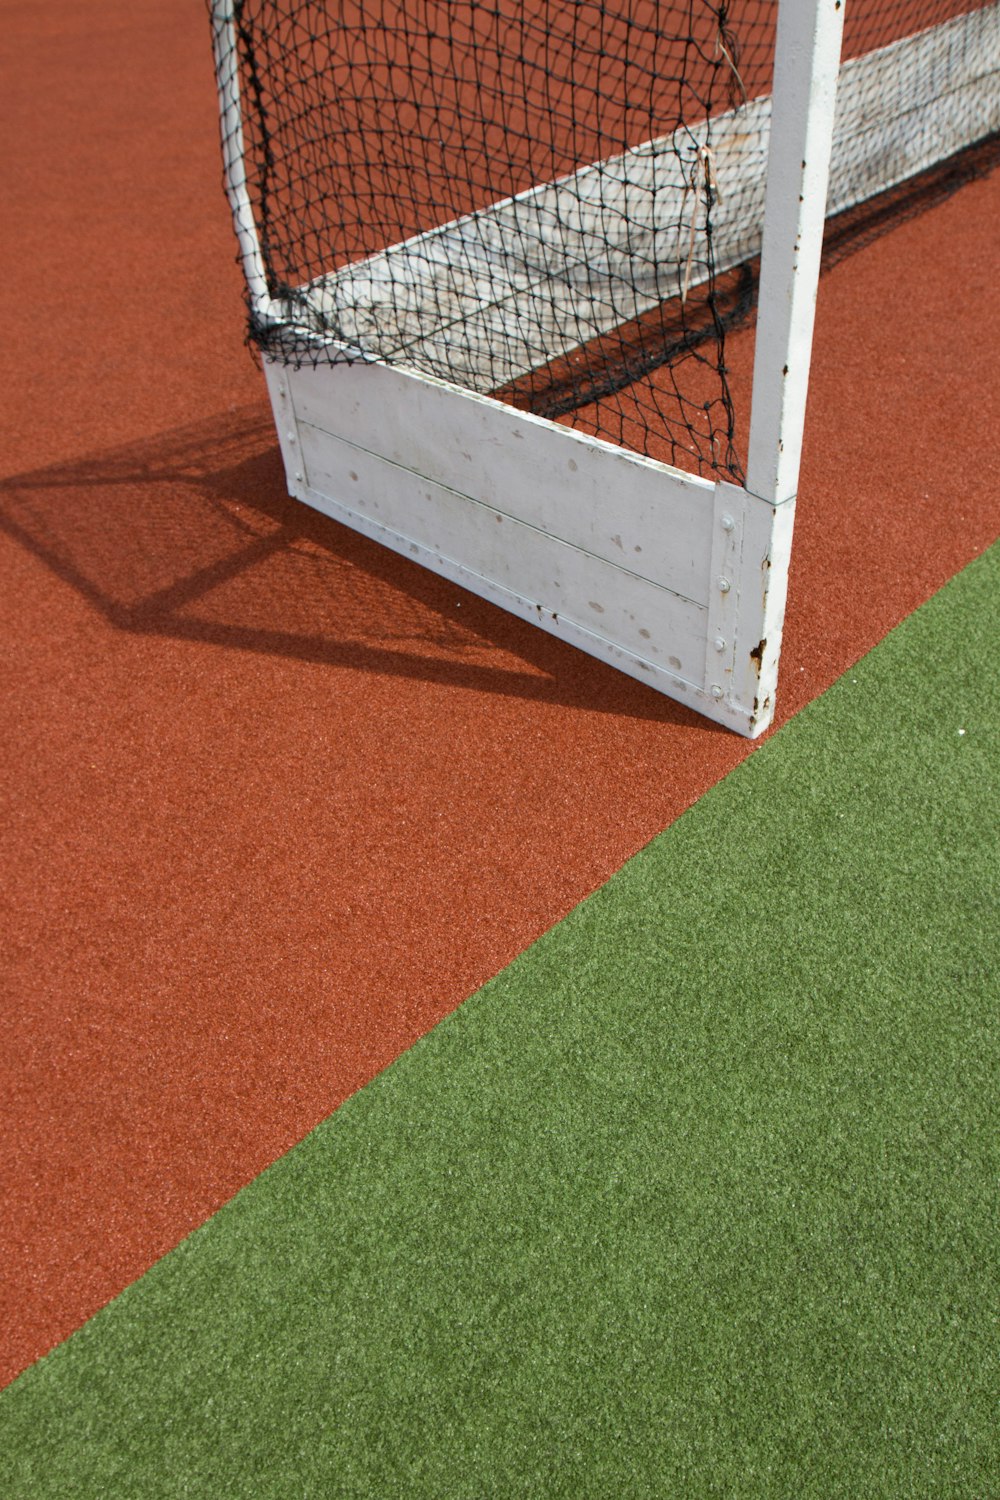 Un primo piano di una rete da tennis su un campo